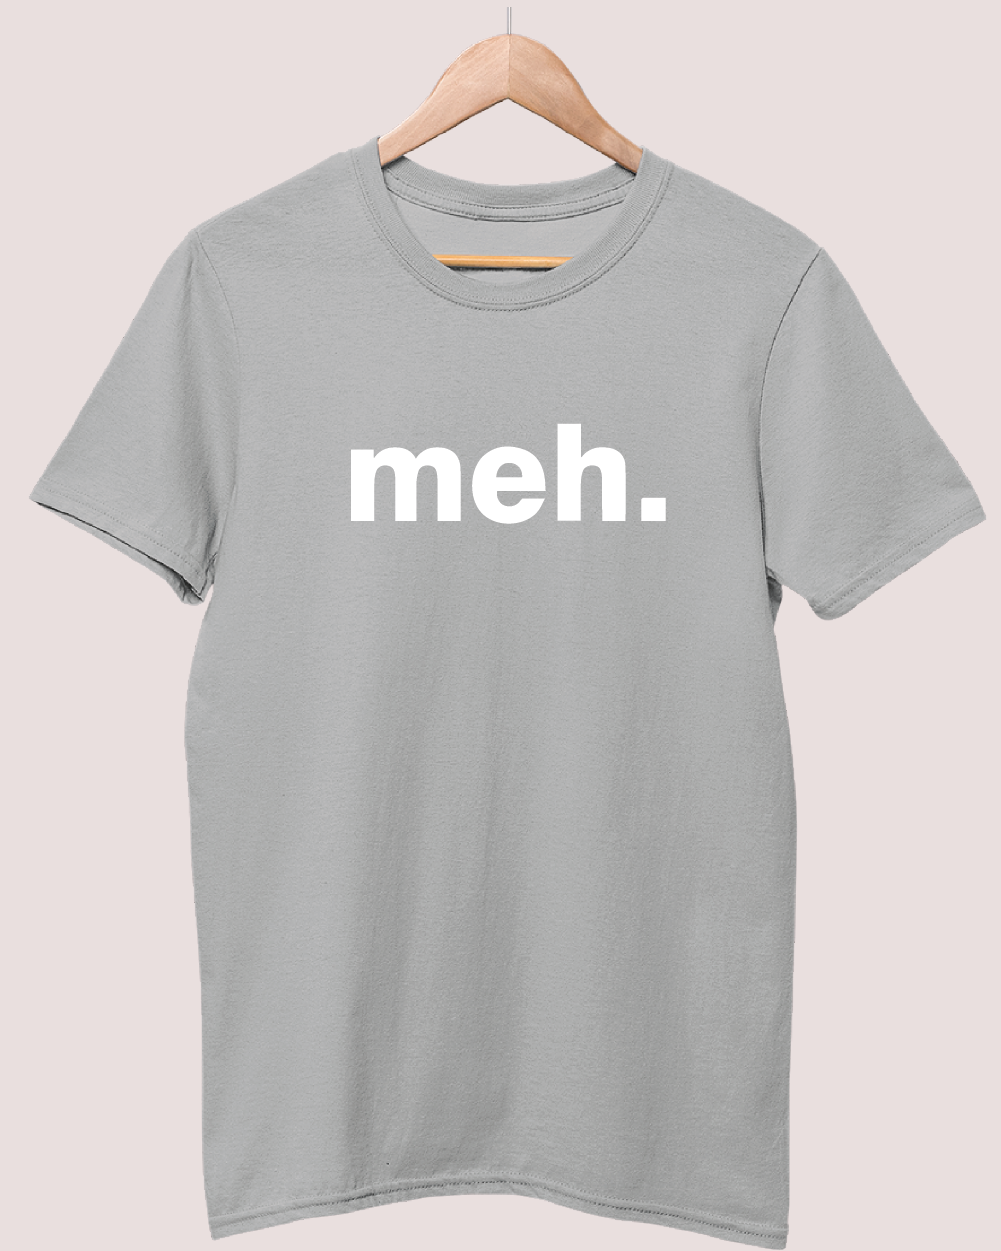 Meh t-shirt